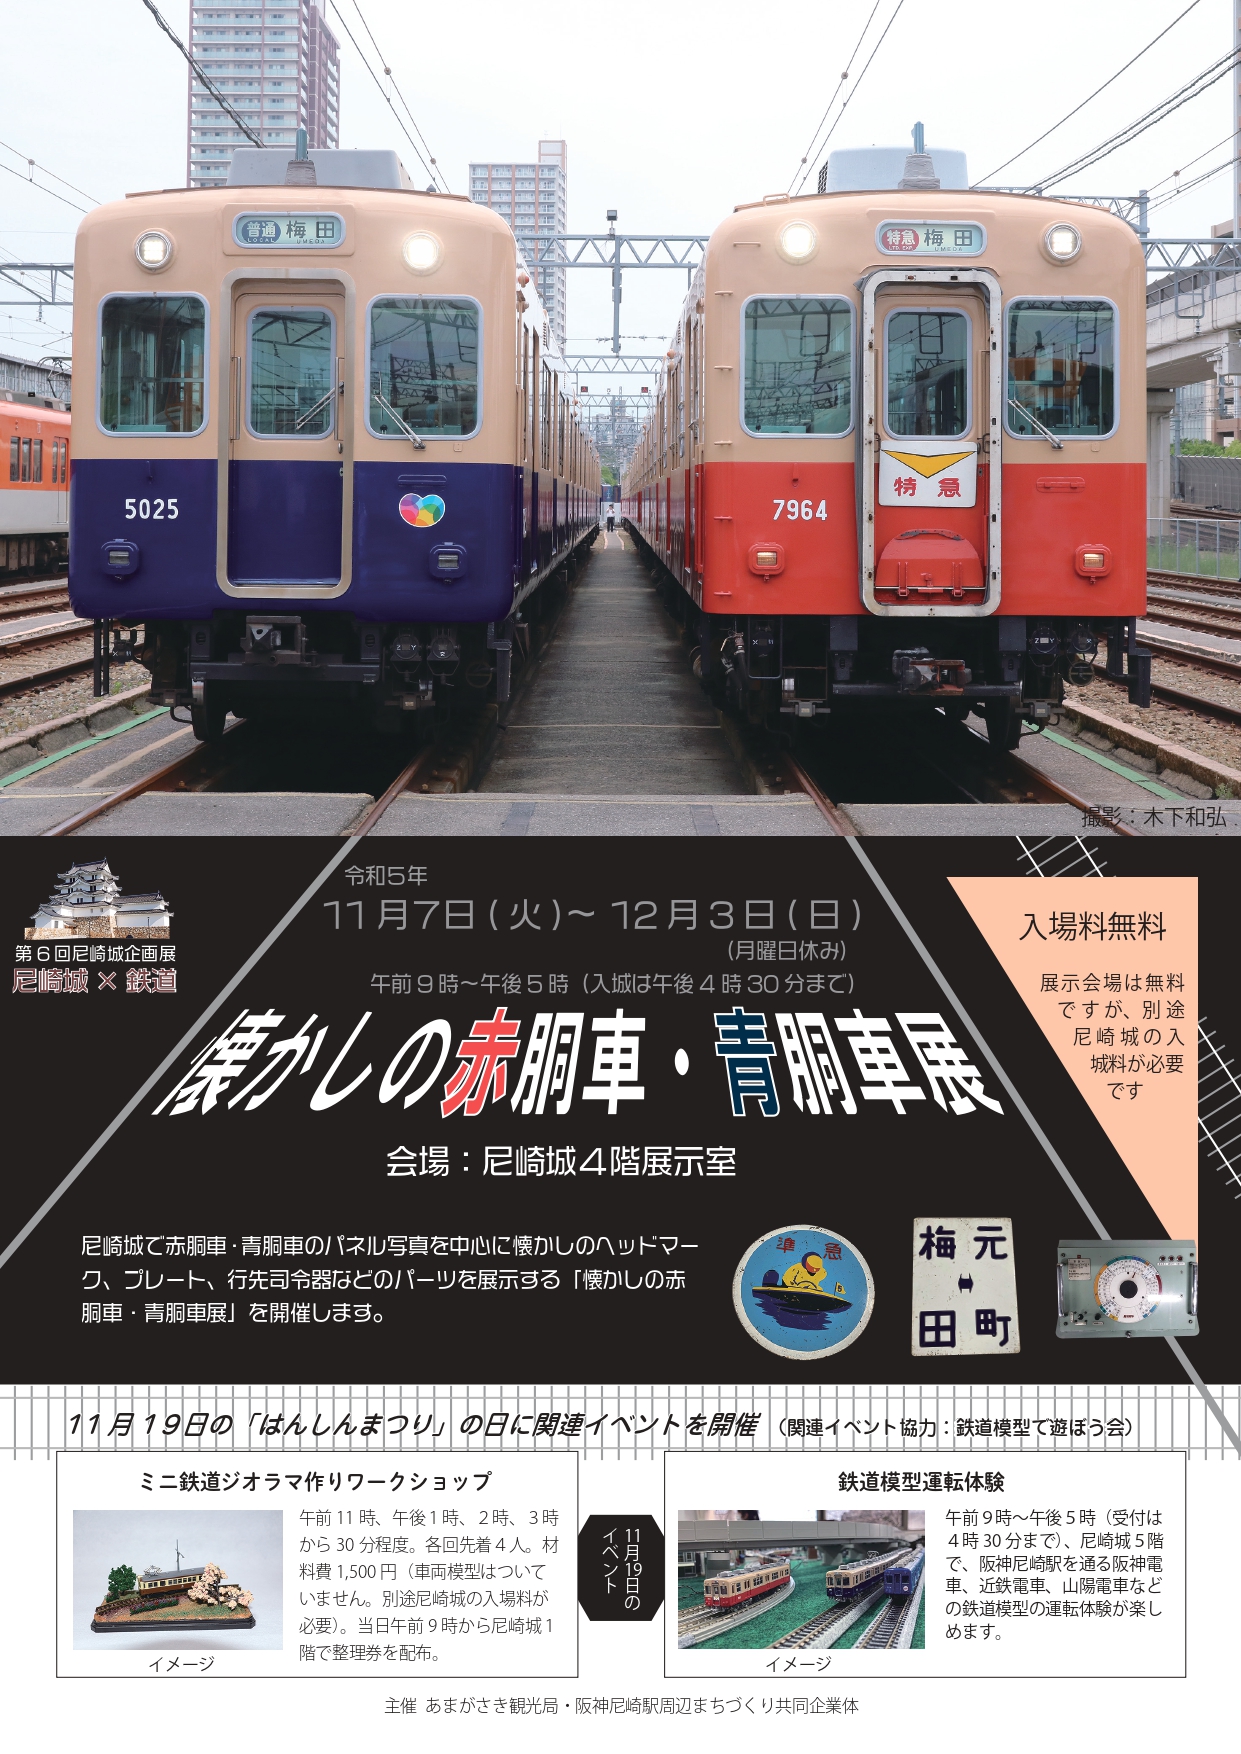 \尼崎城で、阪神電車「懐かしの赤胴車・青胴車展」を開催中です！/